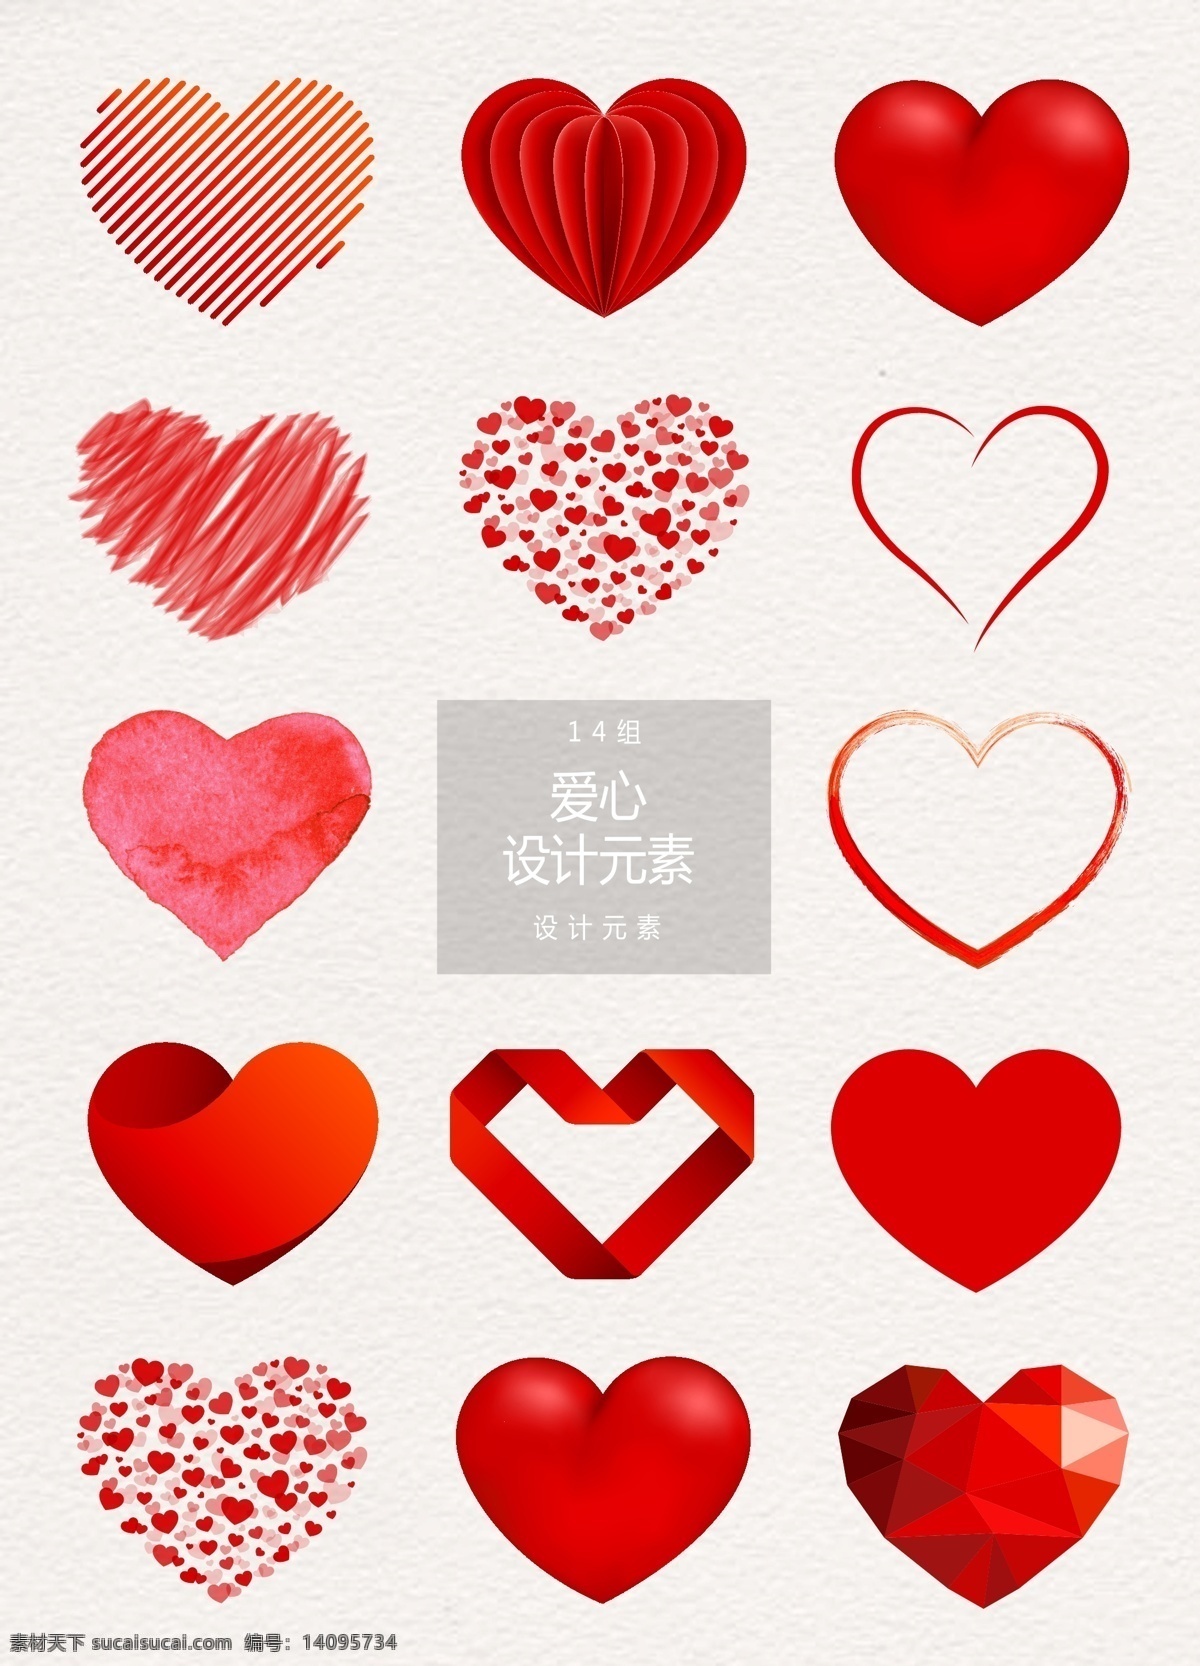 红色 爱心 图案 元素 爱心图案 爱 心形 设计元素 红色爱心 抽象爱心